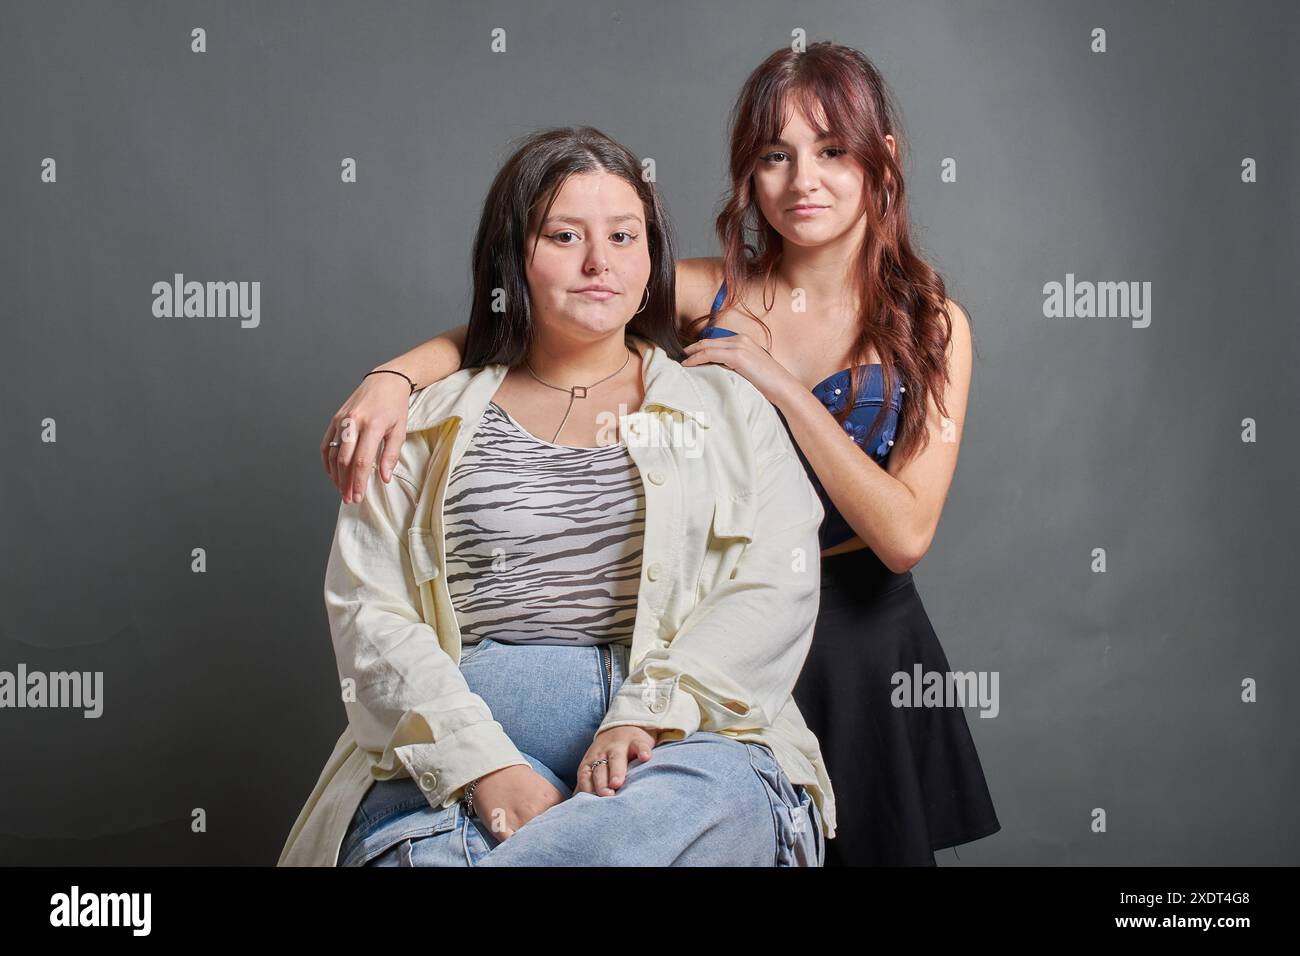 Deux amis hispaniques posant devant la caméra, une relation d'amitié et d'inclusion. Photographie de mode d'adolescents regardant l'appareil photo Banque D'Images